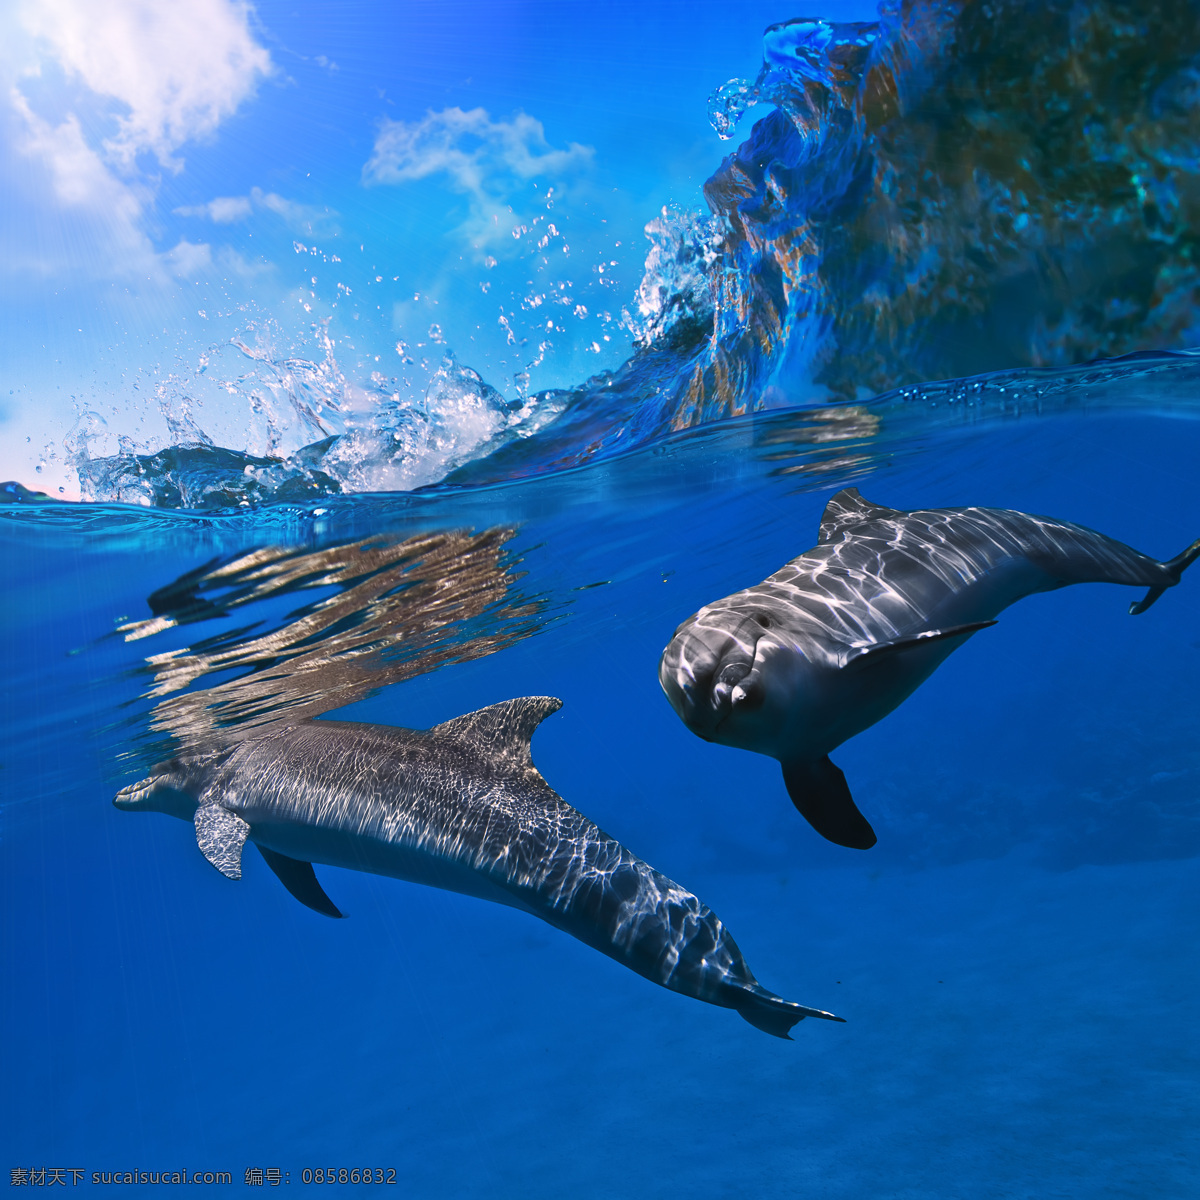 海底 世界 高清 图 海 海水 海底世界 鱼 鱼素材 海底素材 海豚 蓝 蓝色经典 高清摄影图 海浪 浪 浪花 水珠 大海图片 风景图片